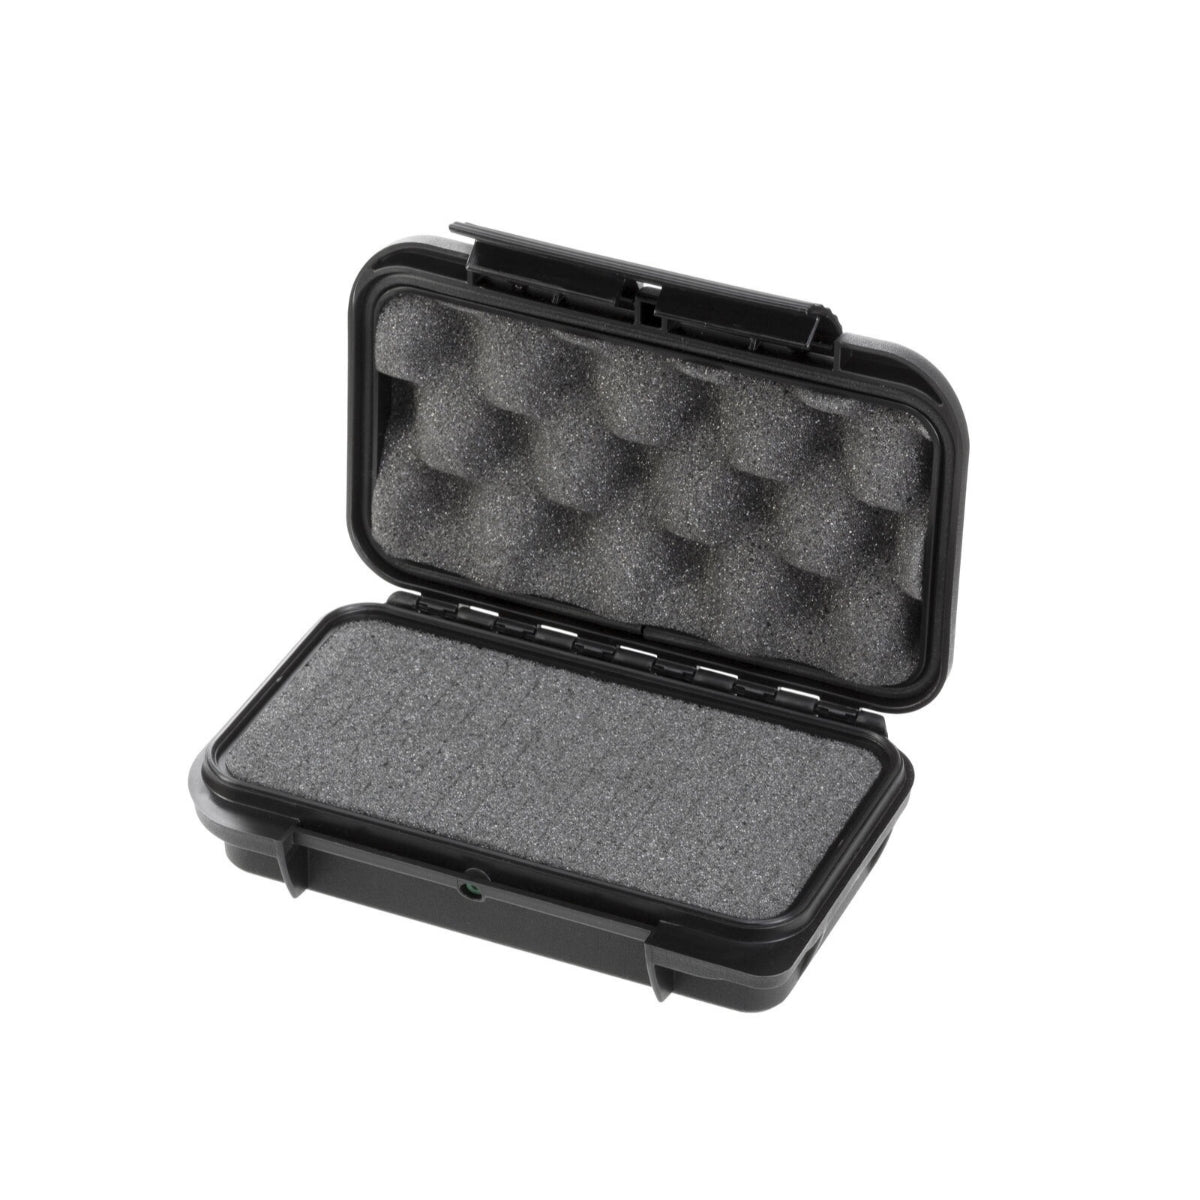 SP PRO 001S Black Case, Cubed Foam, ID: L157xW115xH41mm